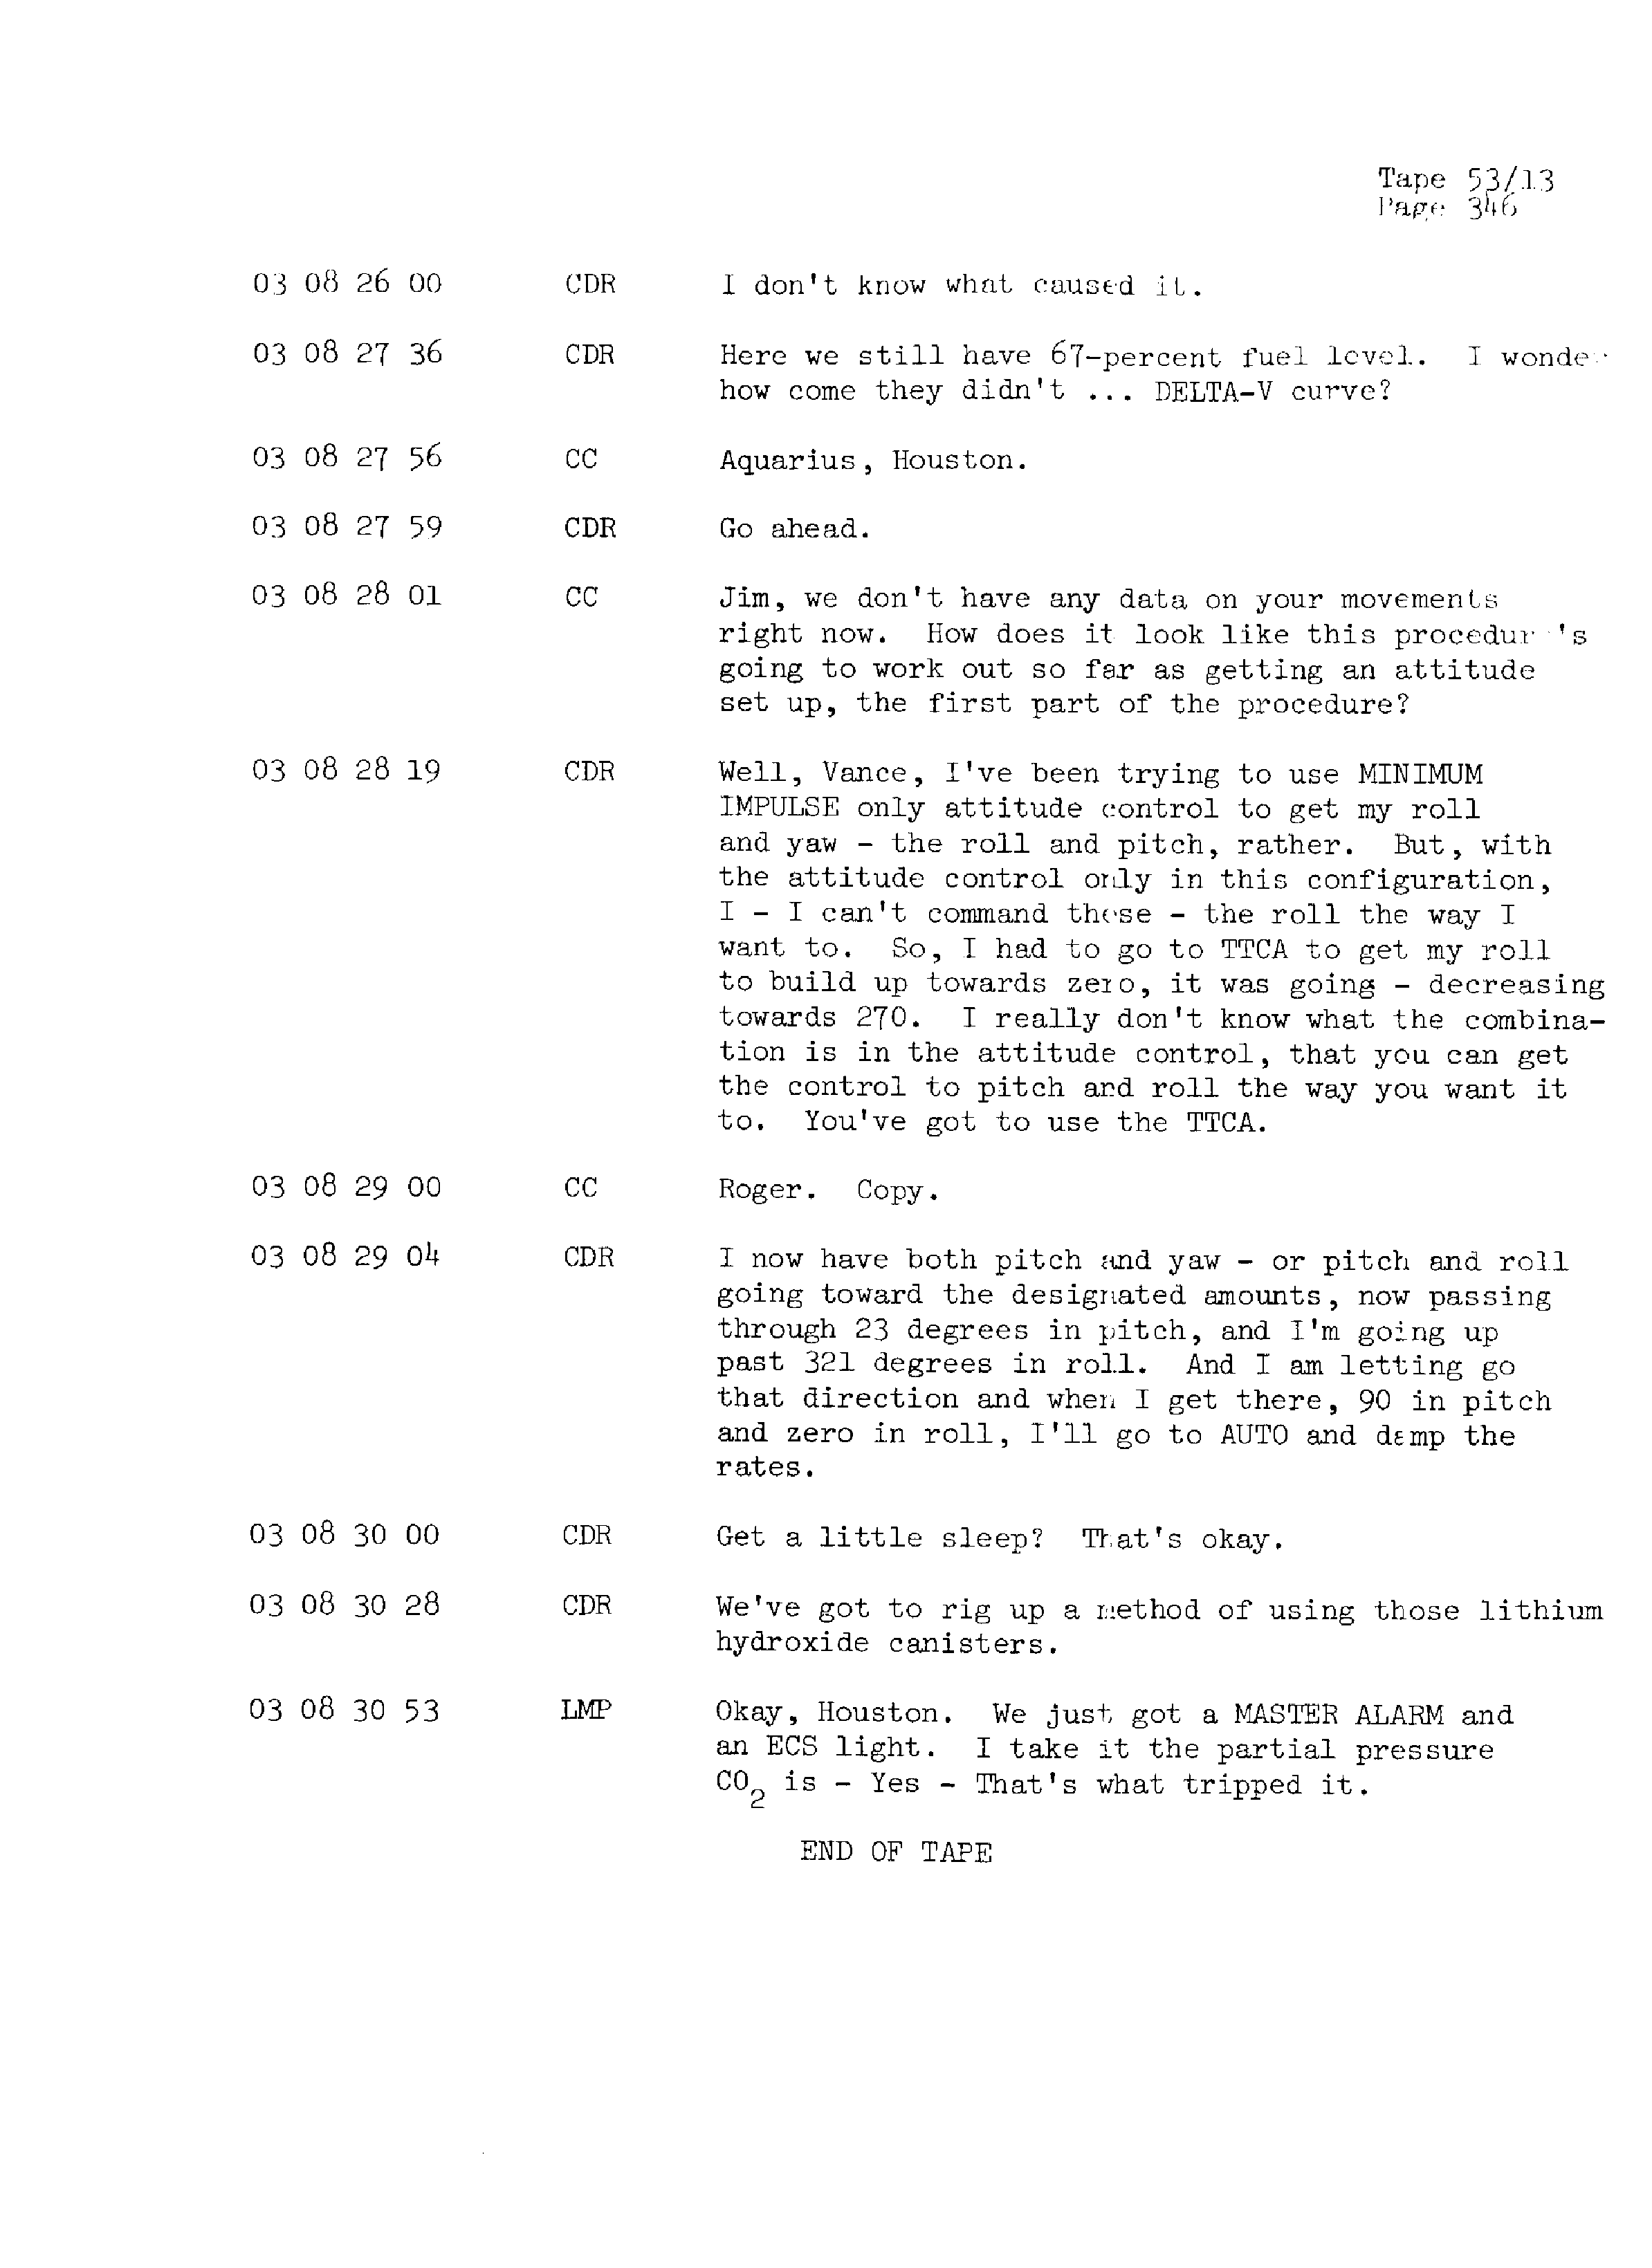 Page 353 of Apollo 13’s original transcript